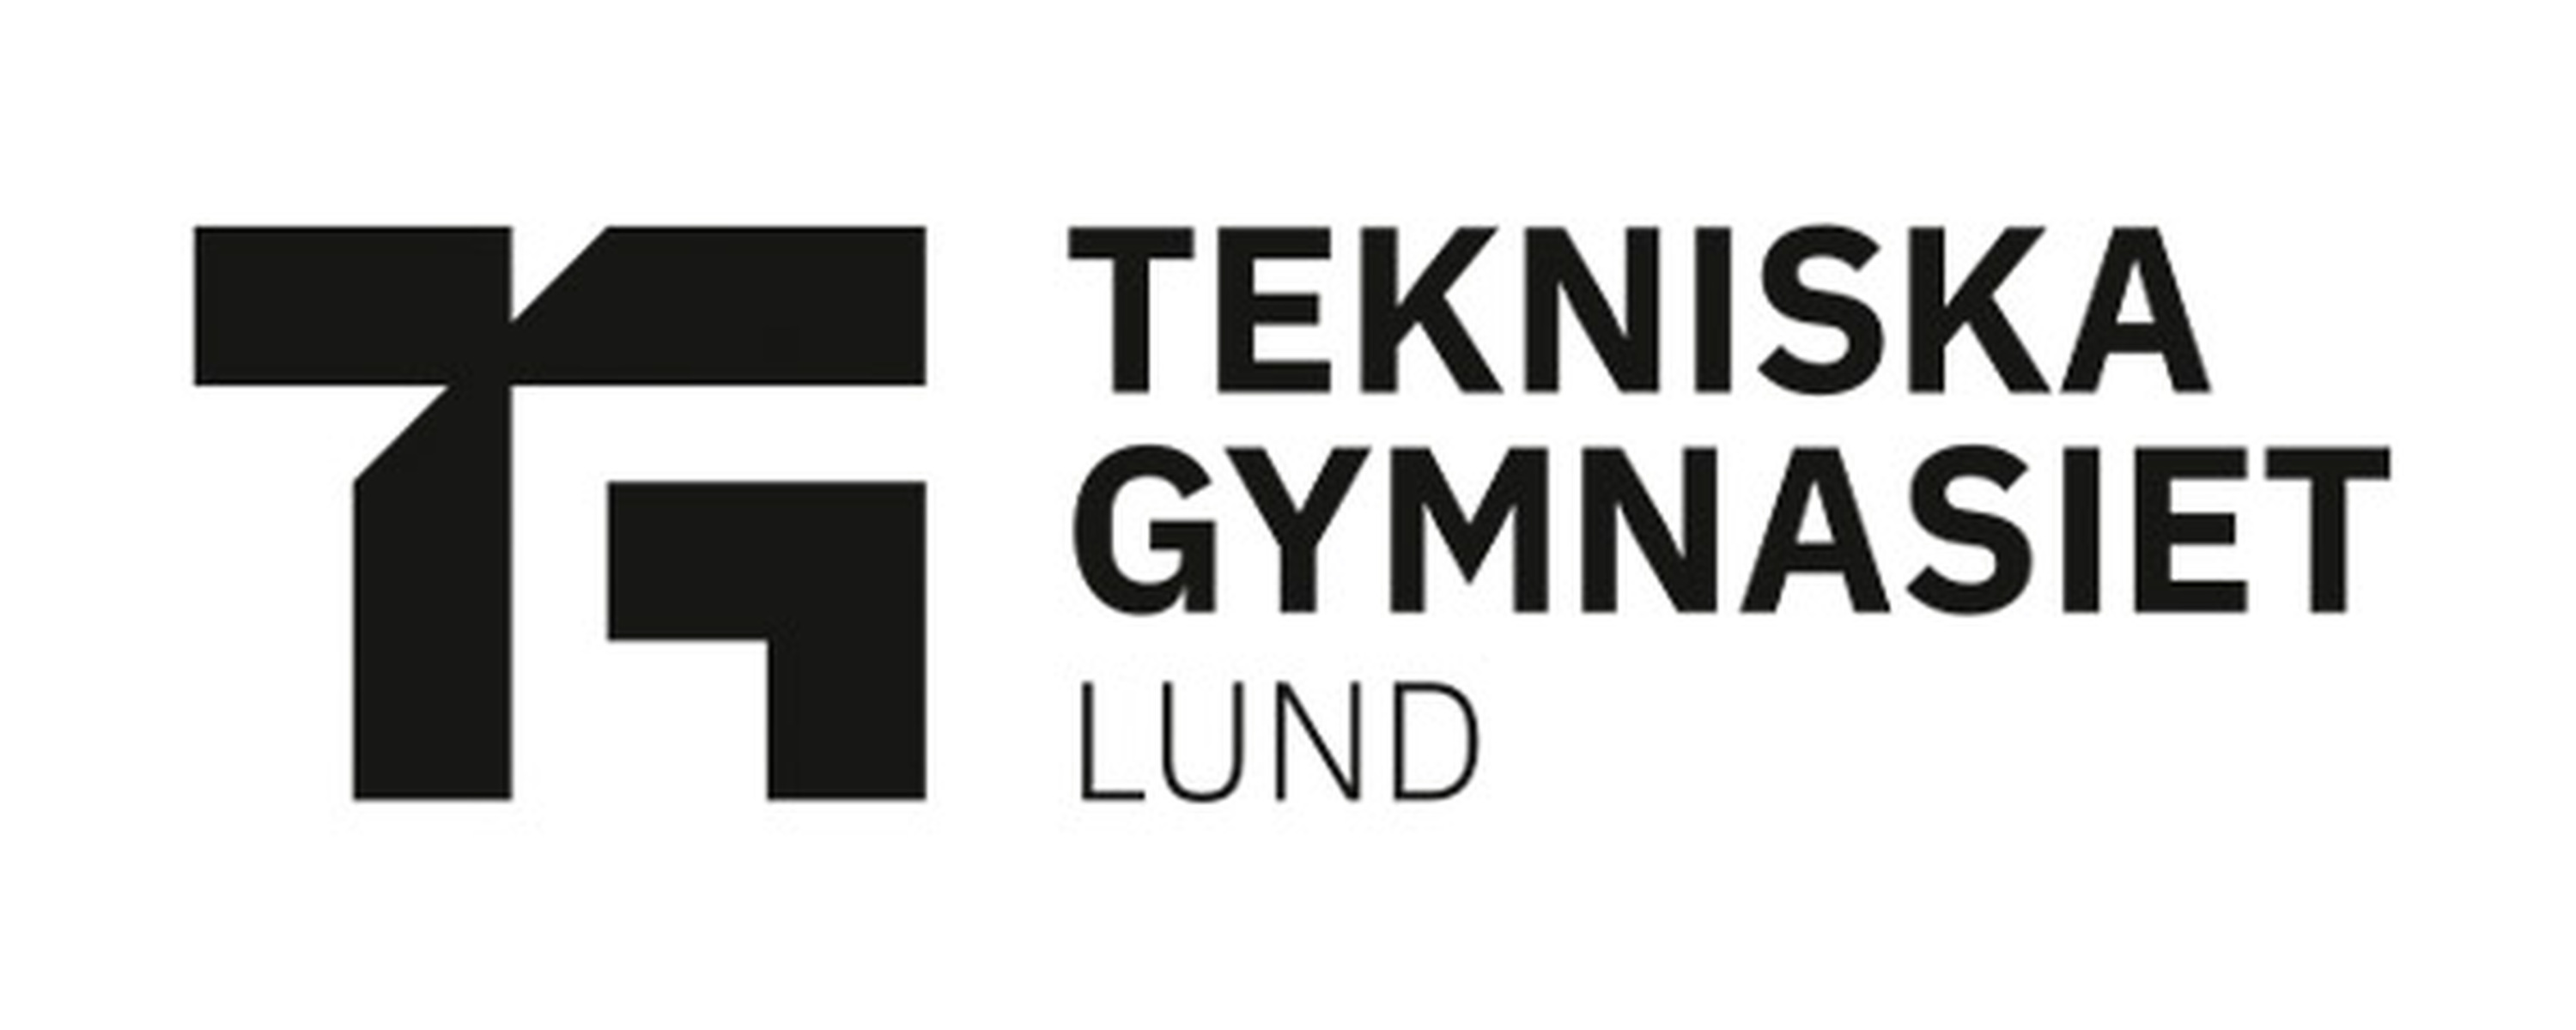 Tekniska Gymnasiet  Lund